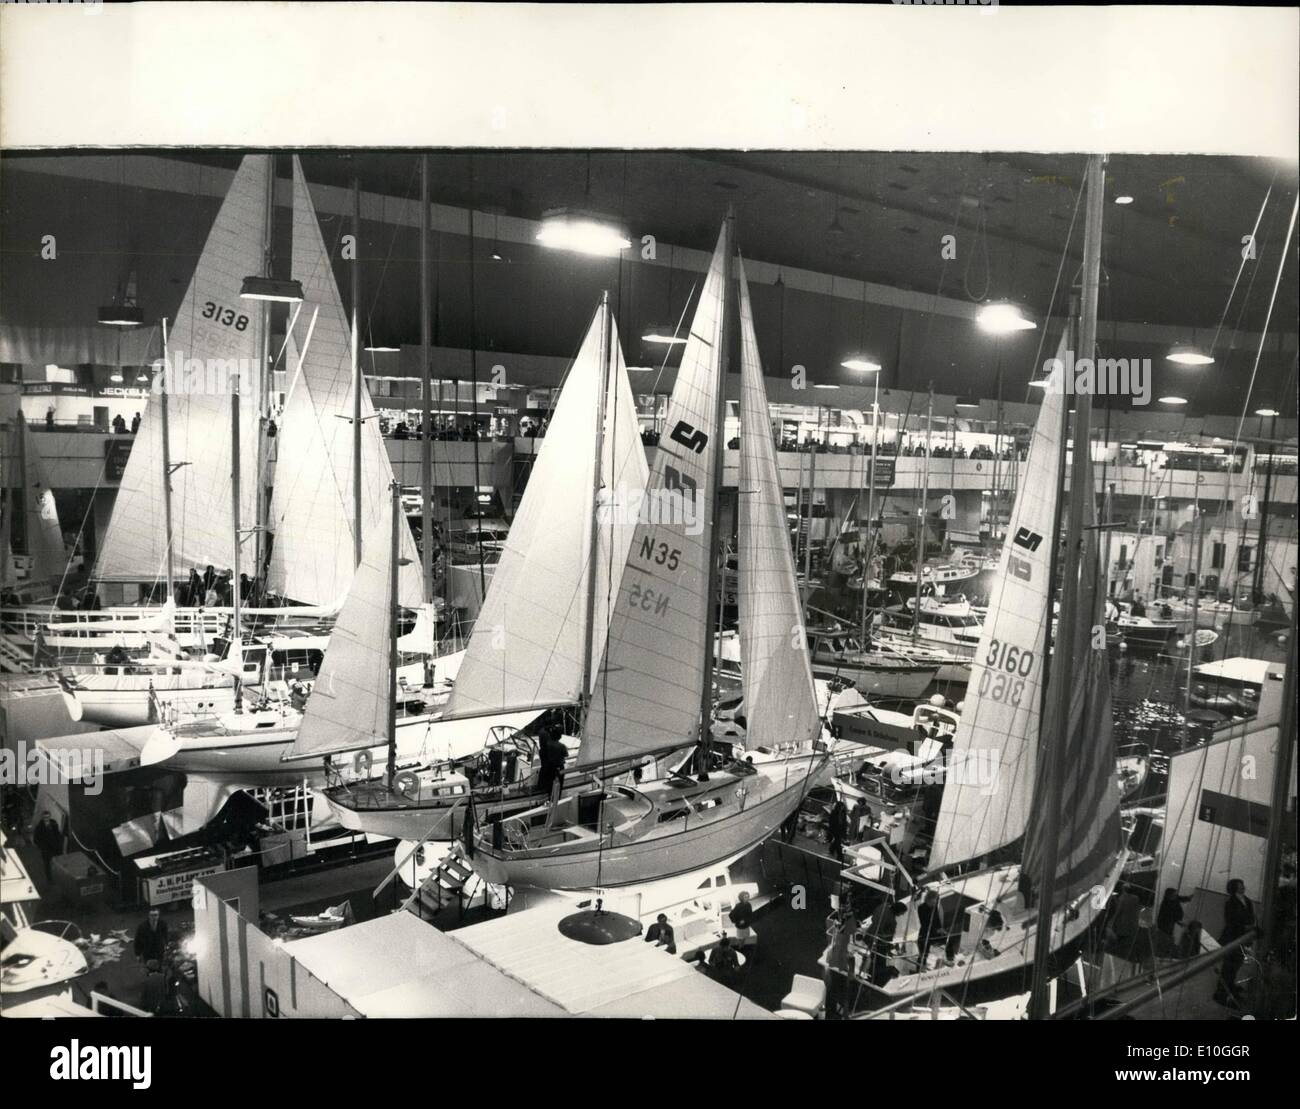 01 janvier 1973 - London International Boat Show. Photo montre :- vue générale de la London International Boat Show qui a ouvert ses portes aujourd'hui à Earls Court. Banque D'Images